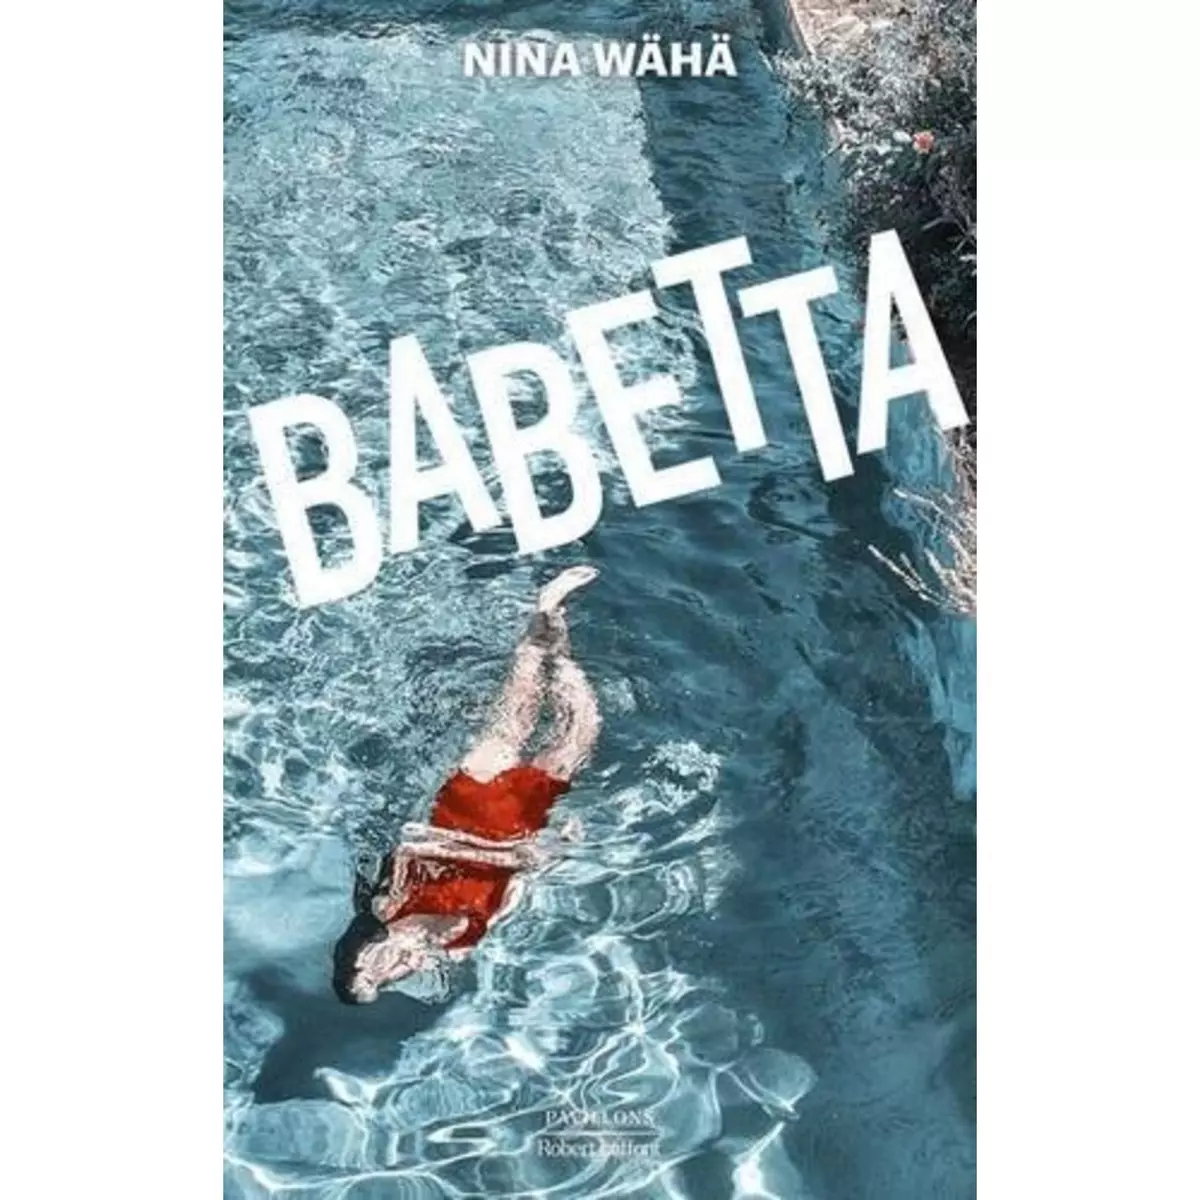  BABETTA, Wähä Nina